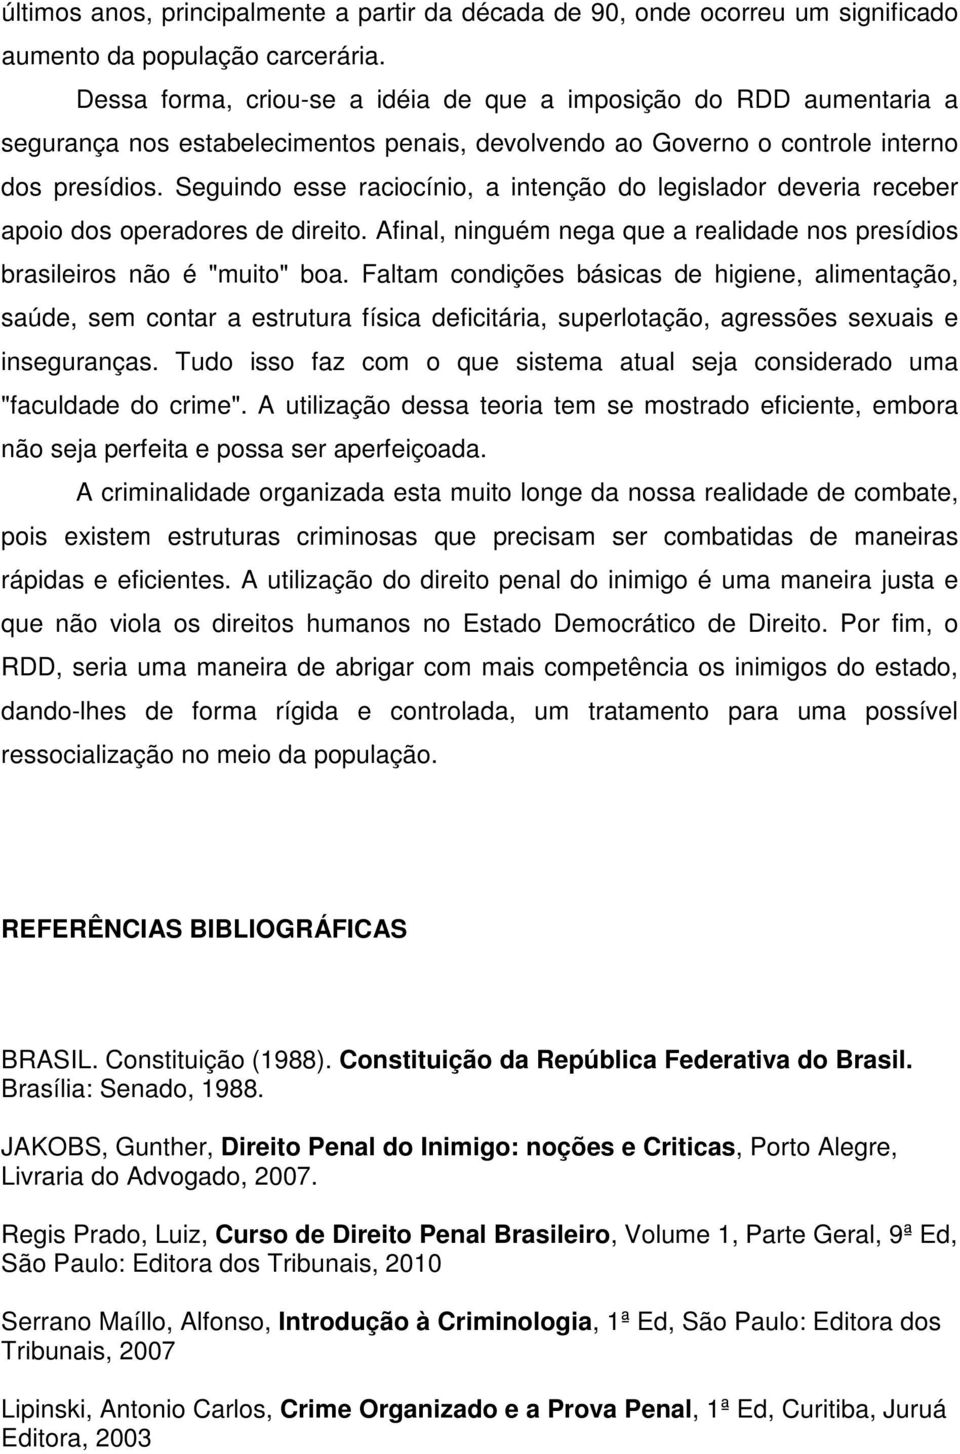 Seguindo esse raciocínio, a intenção do legislador deveria receber apoio dos operadores de direito. Afinal, ninguém nega que a realidade nos presídios brasileiros não é "muito" boa.